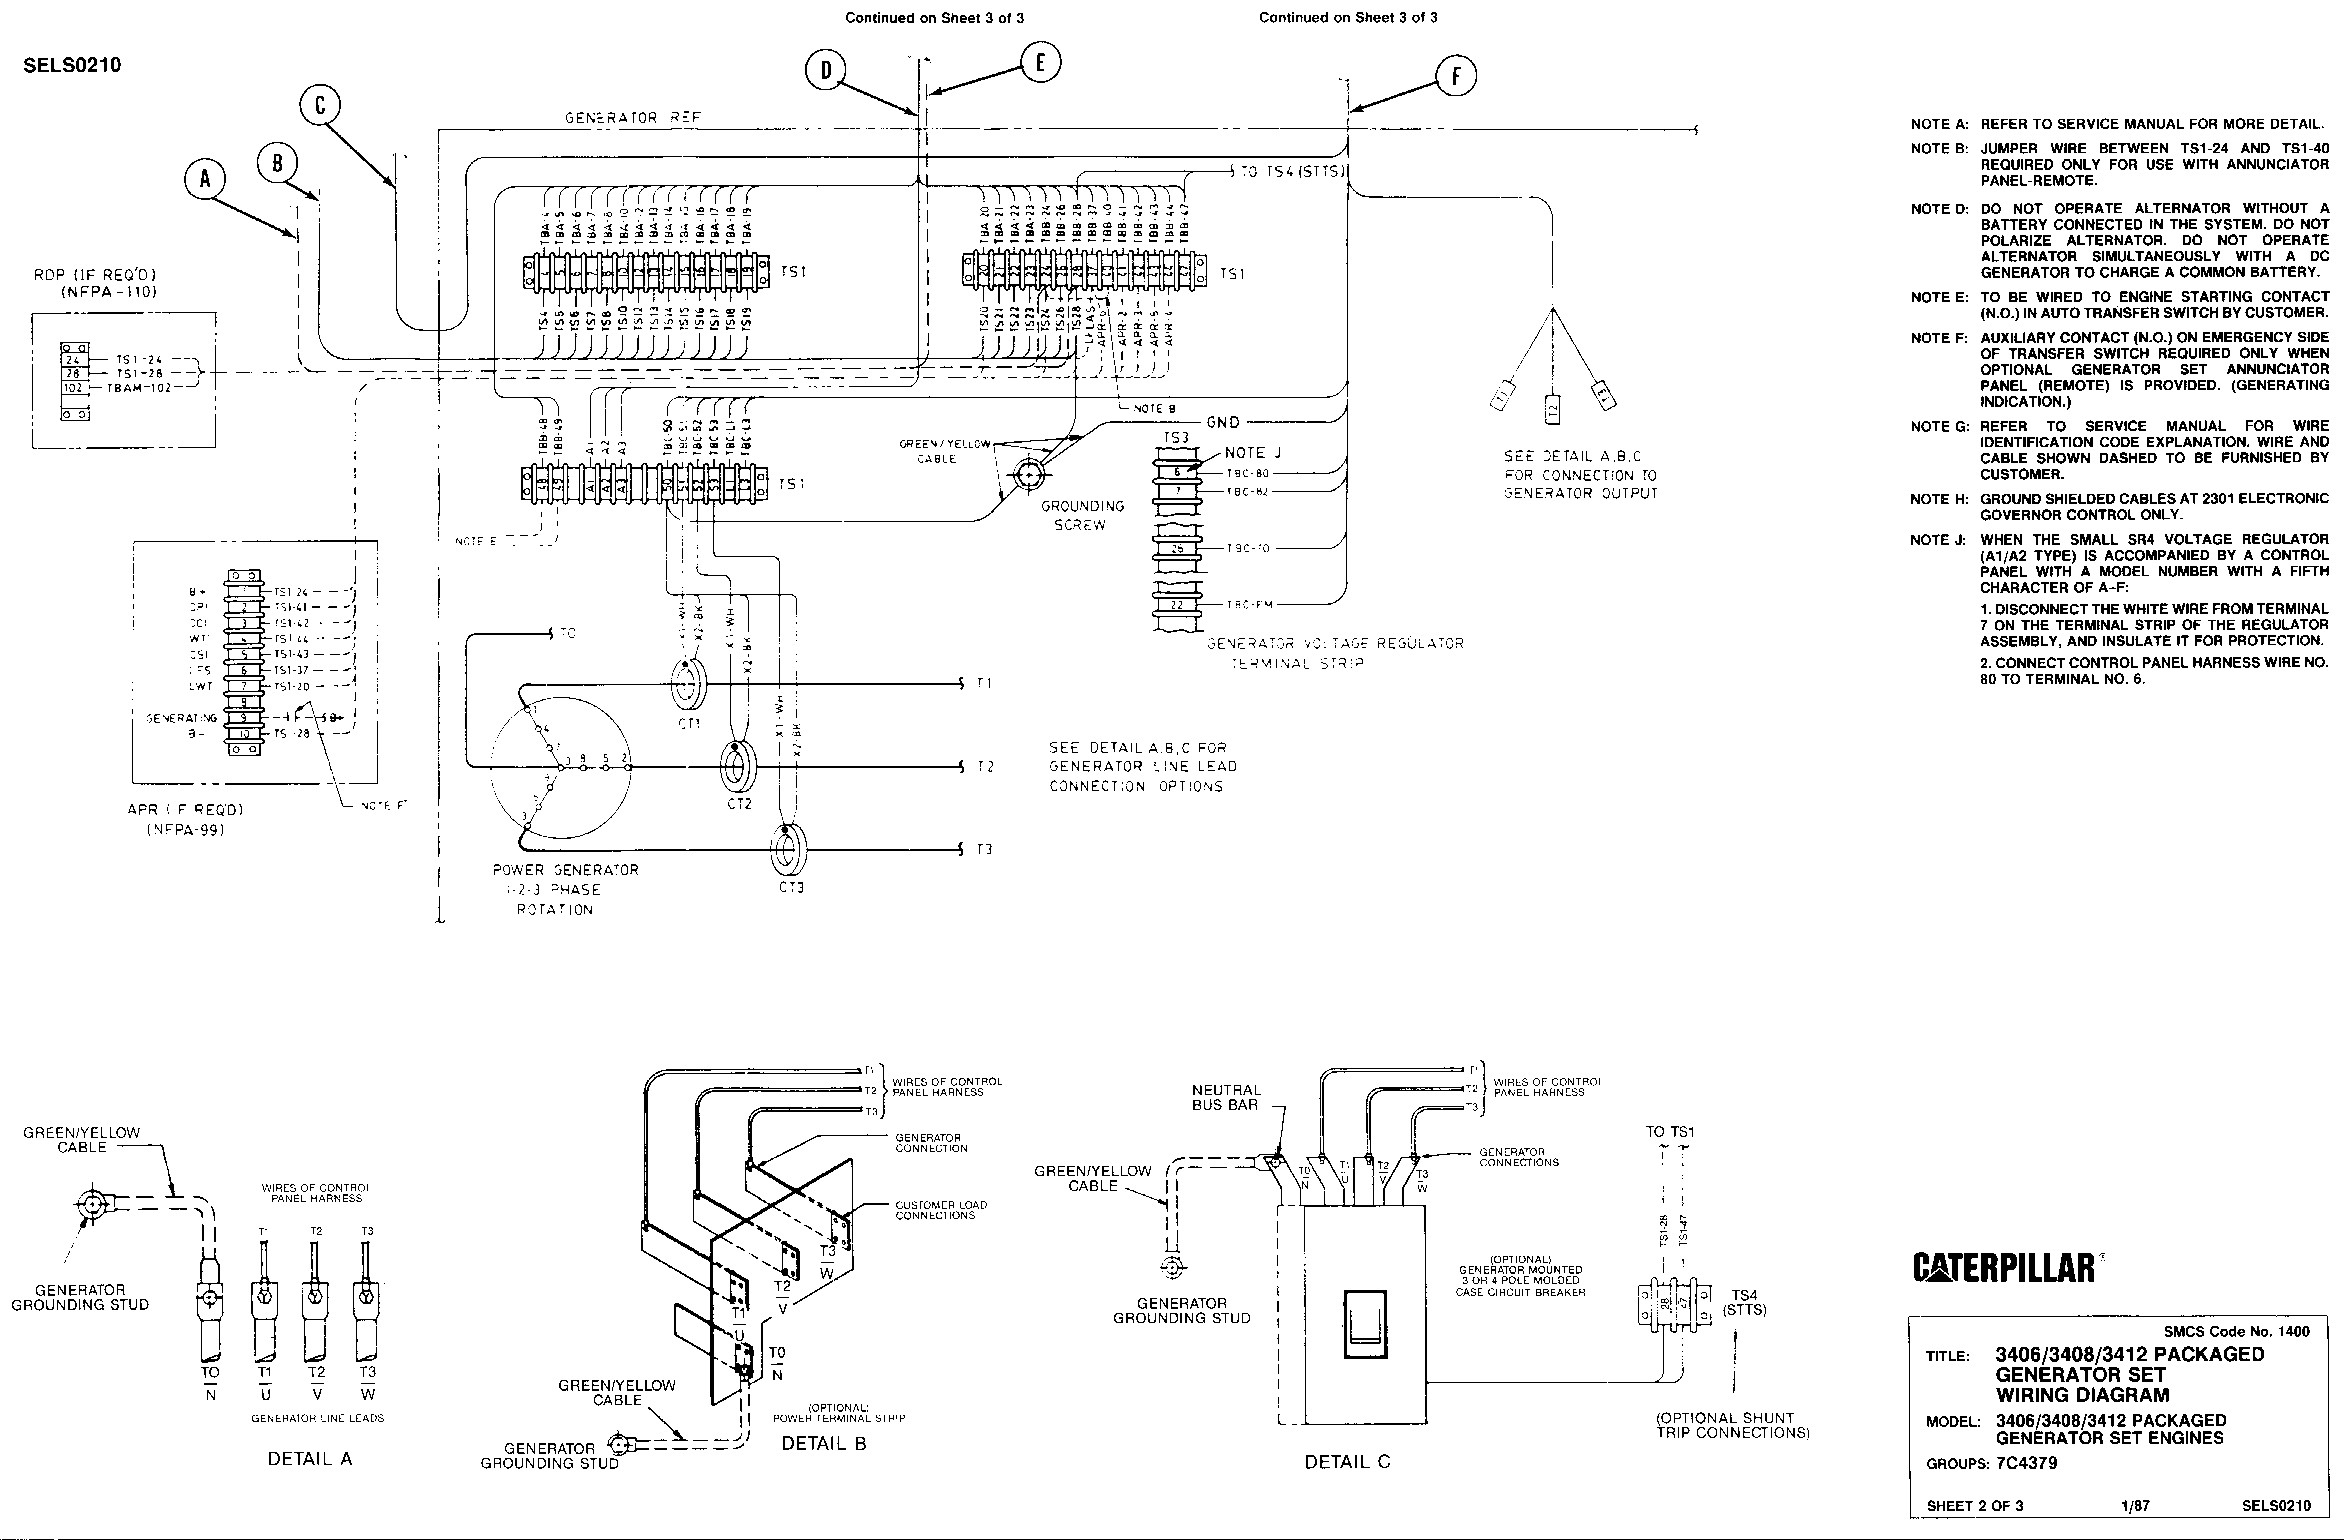 Cat C10 Ecm Wiring Diagram | Wiring Diagram - Cat C15 Ecm Wiring Diagram